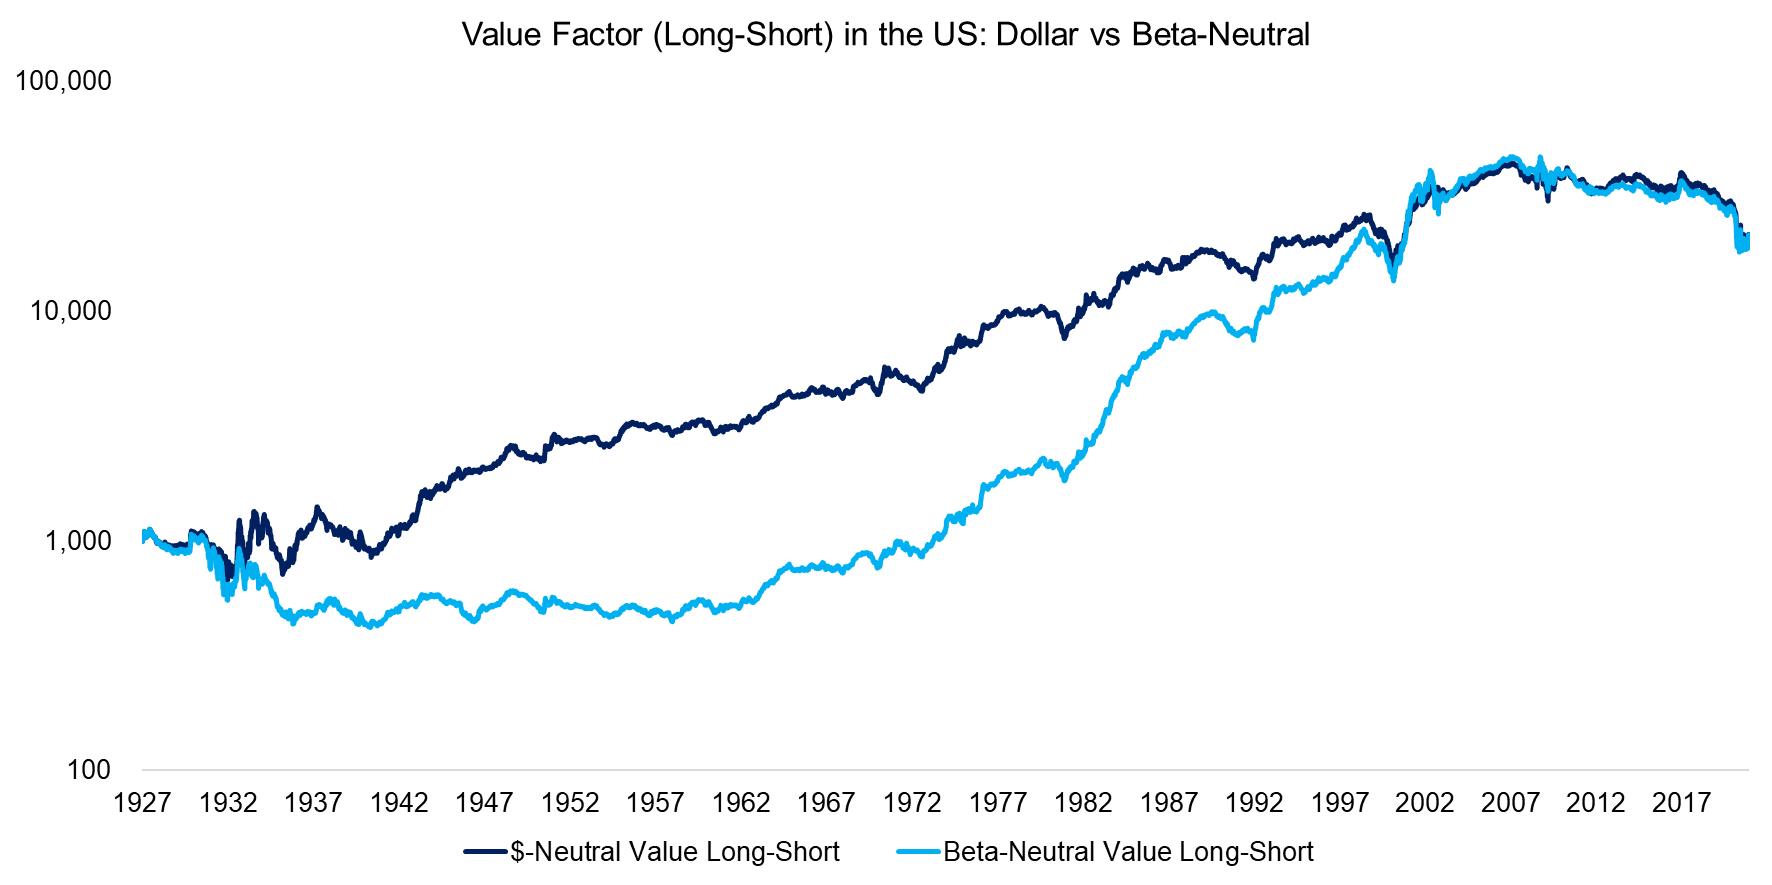 Value Factor (Long-Short) in the US Dollar vs Beta-Neutral